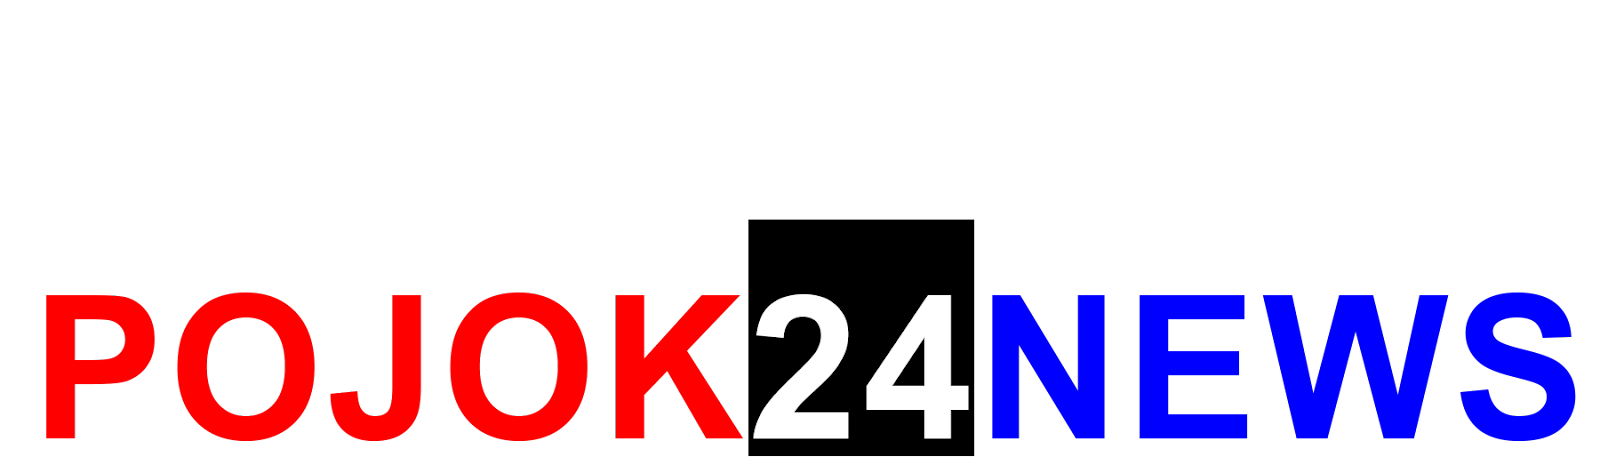 Pojok24News